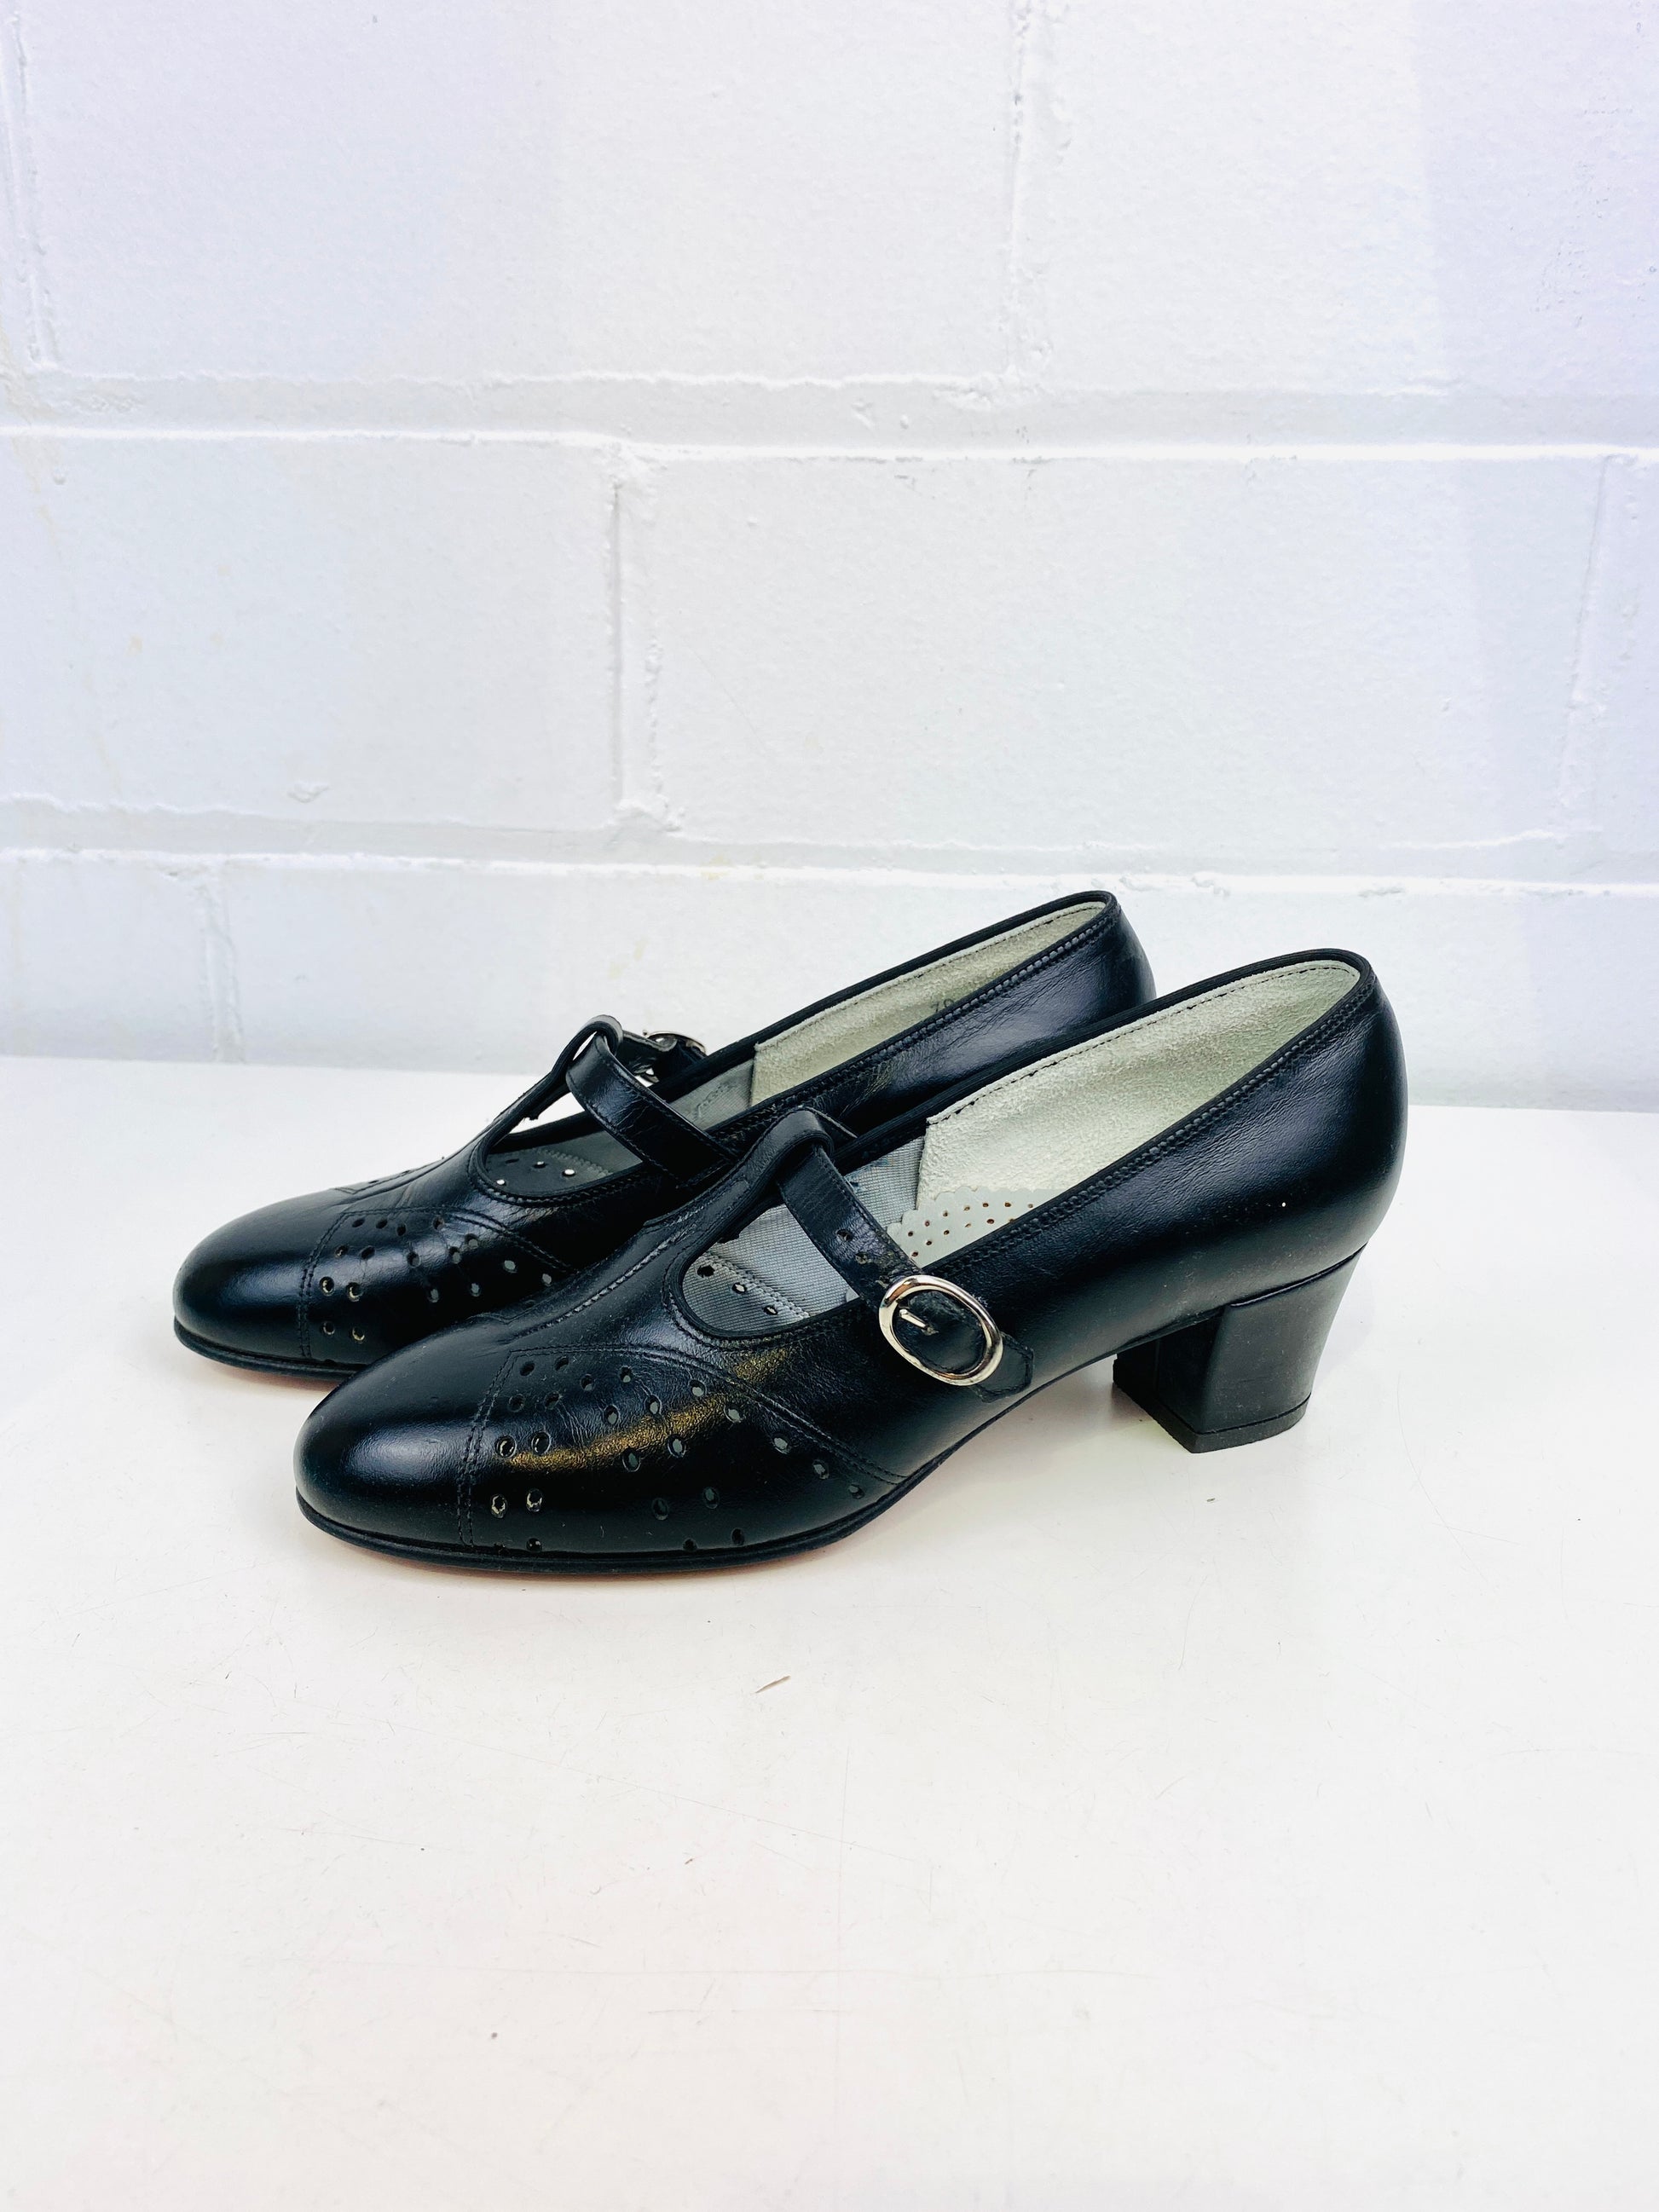 Vintage Deadstock Shoes, Women's 1980s Black Leather Cuban Heel T-Strap Pumps, NOS, 7869